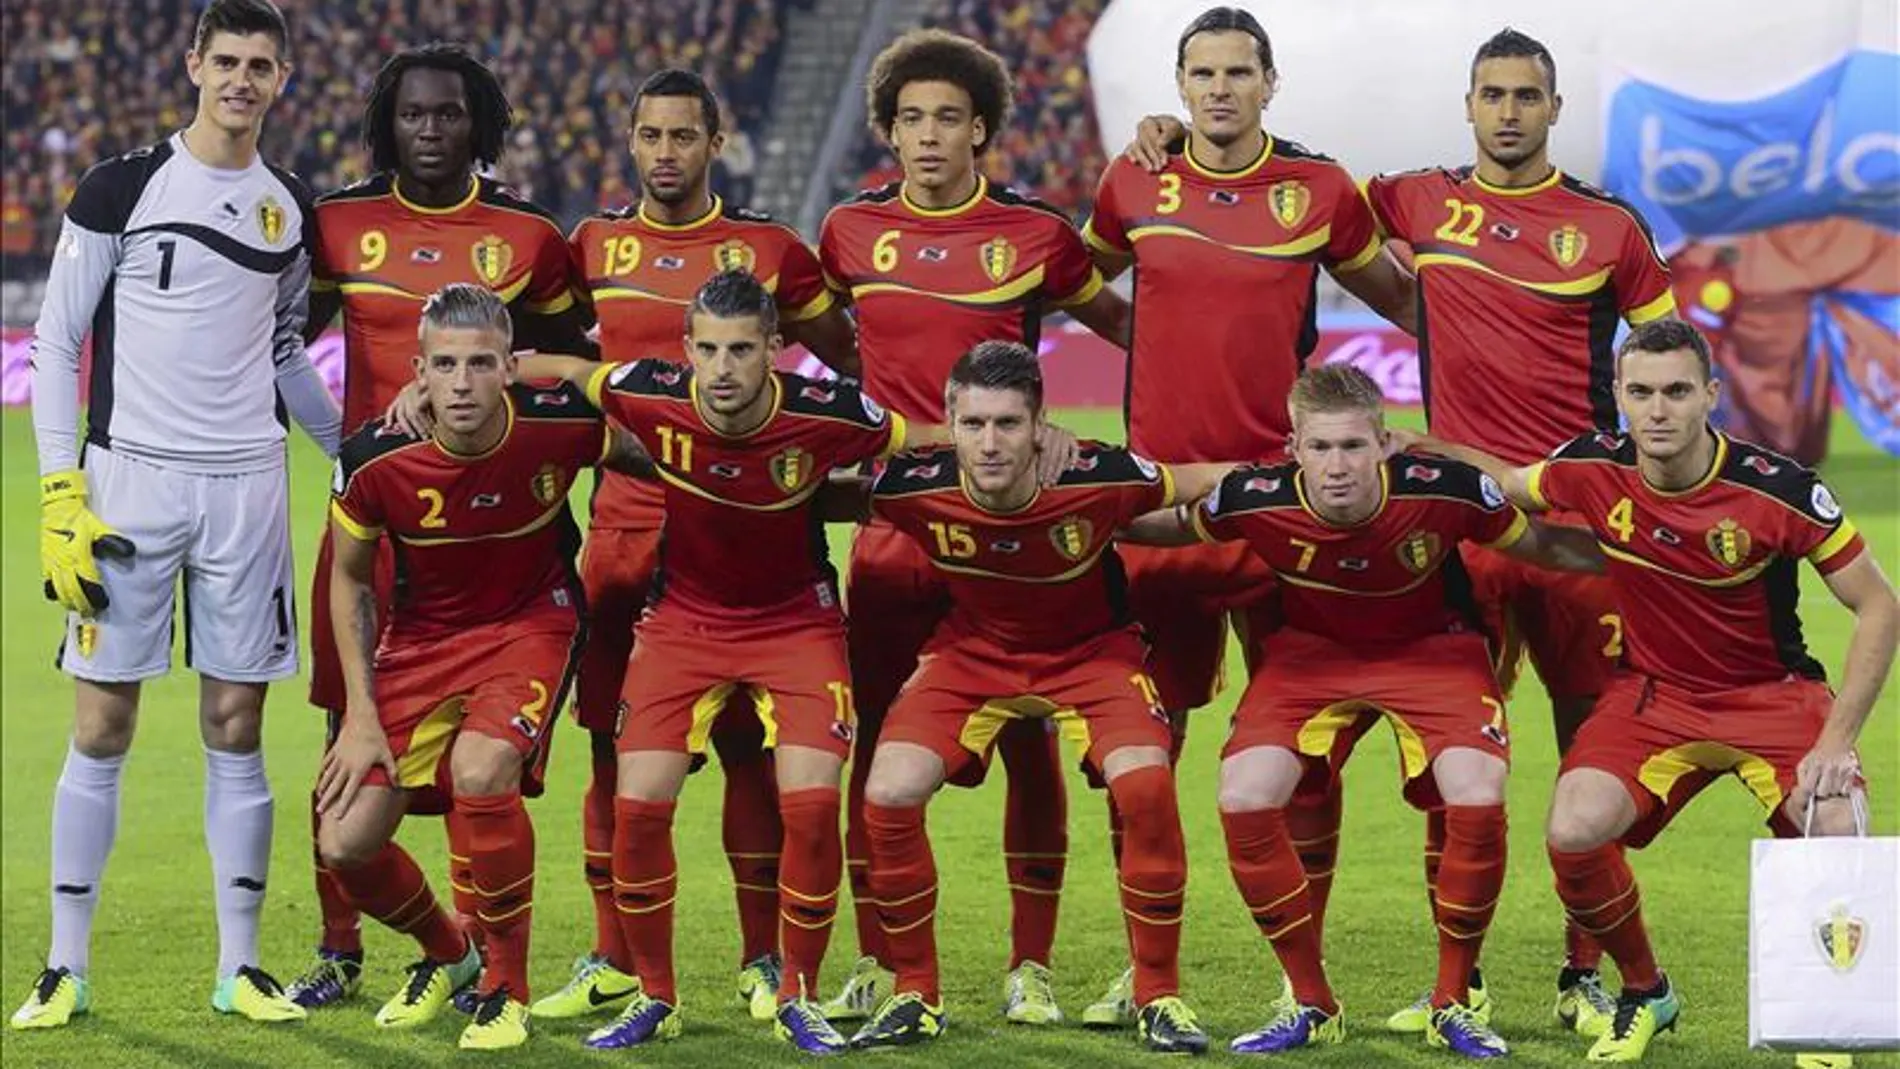 Los jugadores de la selección belga, antes del partido de clasificación para el Mundial disputado frente a Gales en octubre